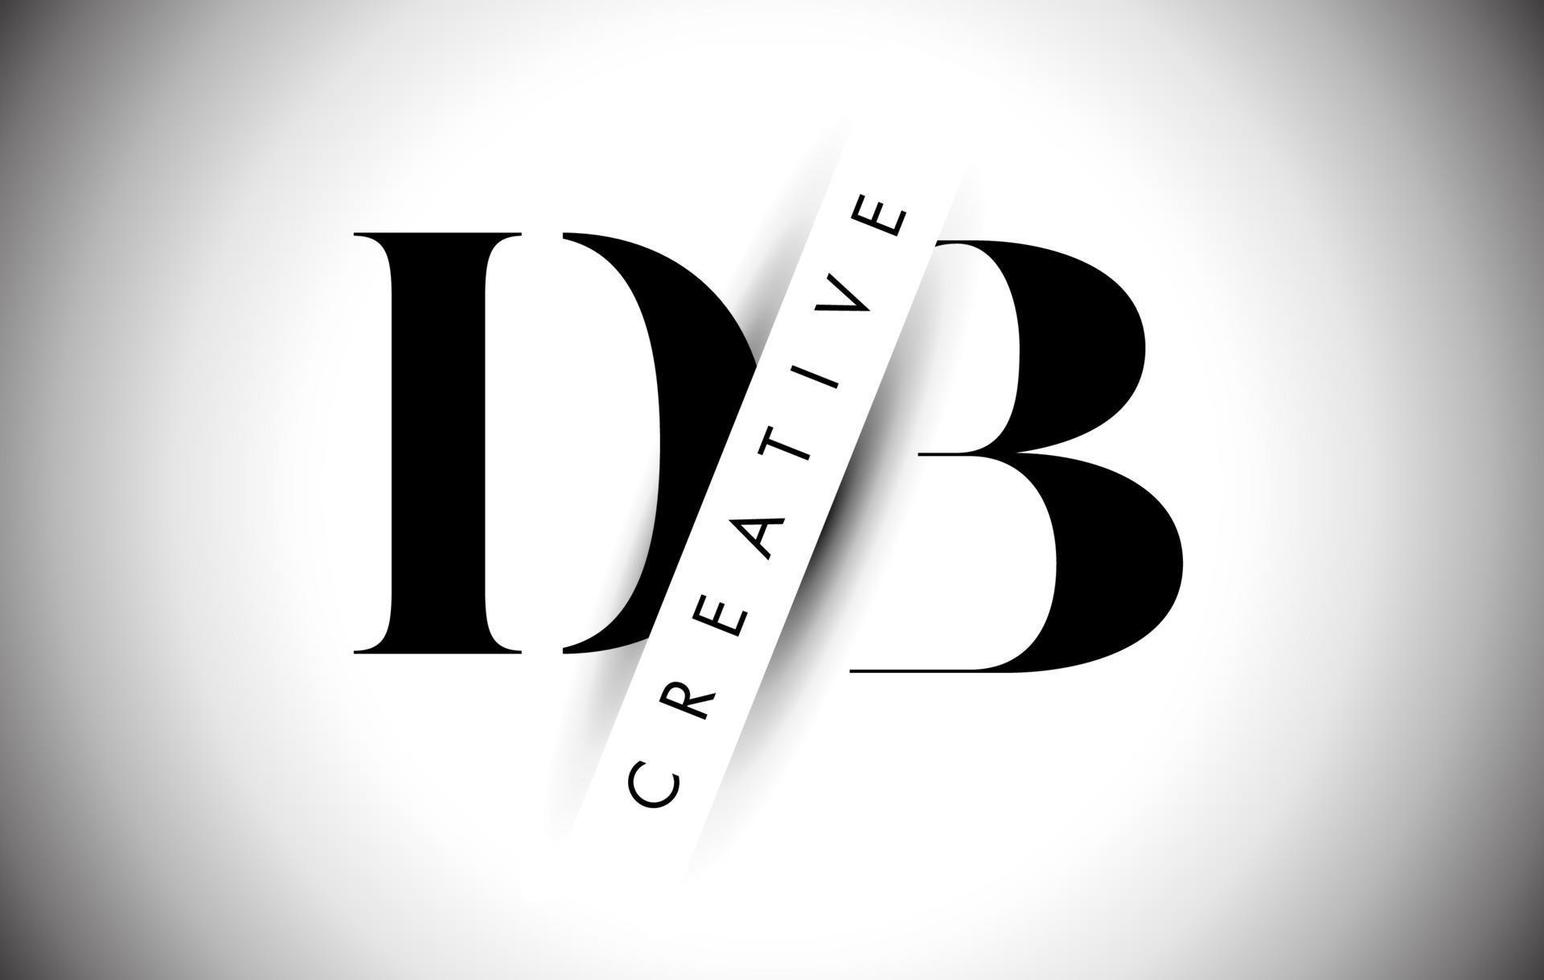 db db-Brieflogo mit kreativem Schattenschnitt und überlagertem Textdesign. vektor